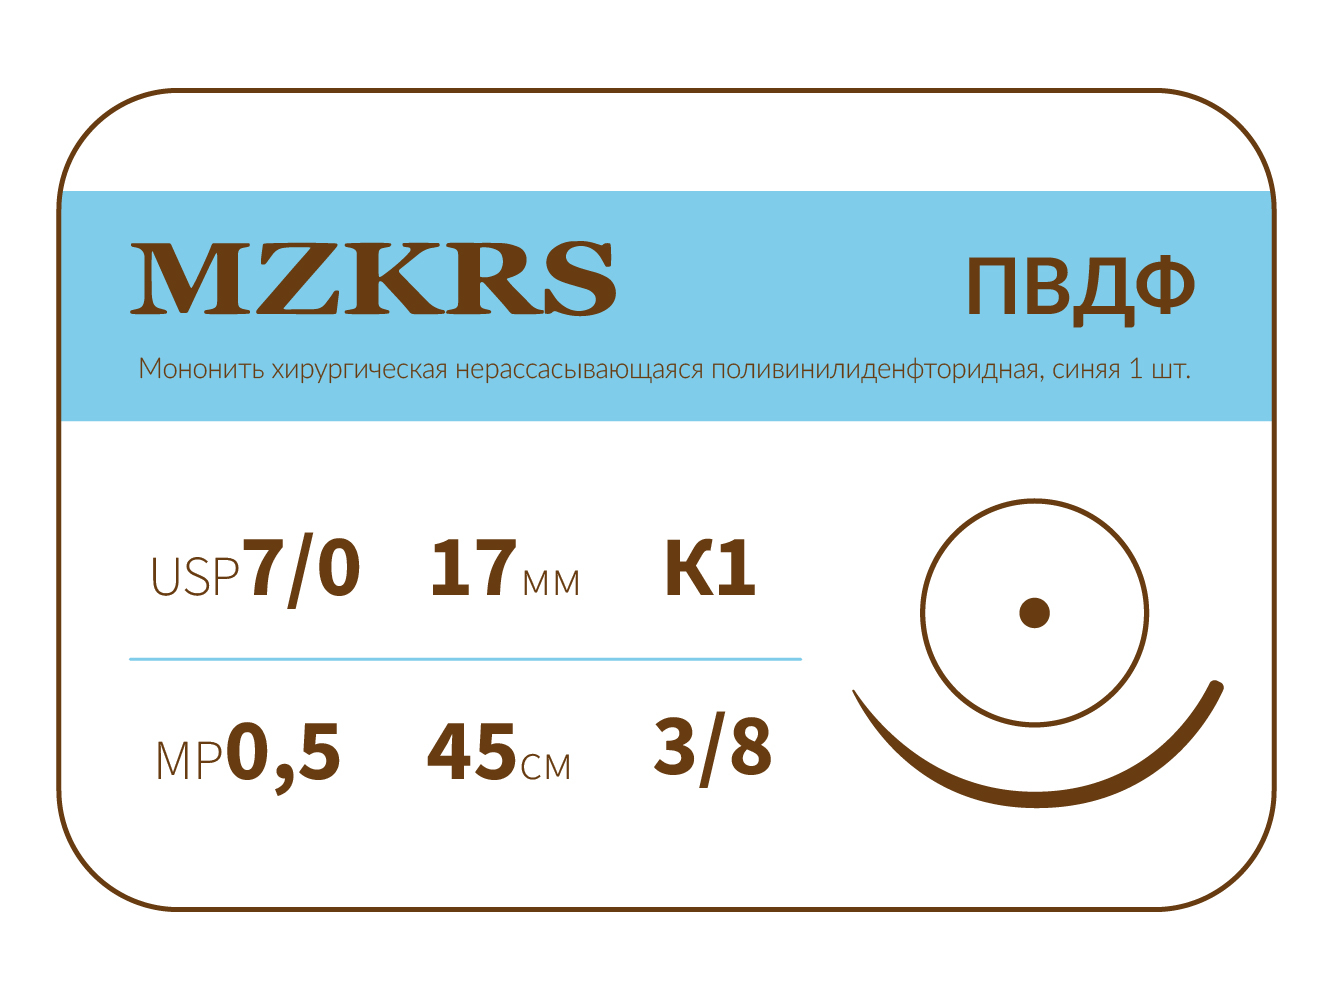 1738К1-Premium-7/0 (0.5)45 ПВДФ хирургическая нить поливинилиденфторидная, MZKRS (Россия)